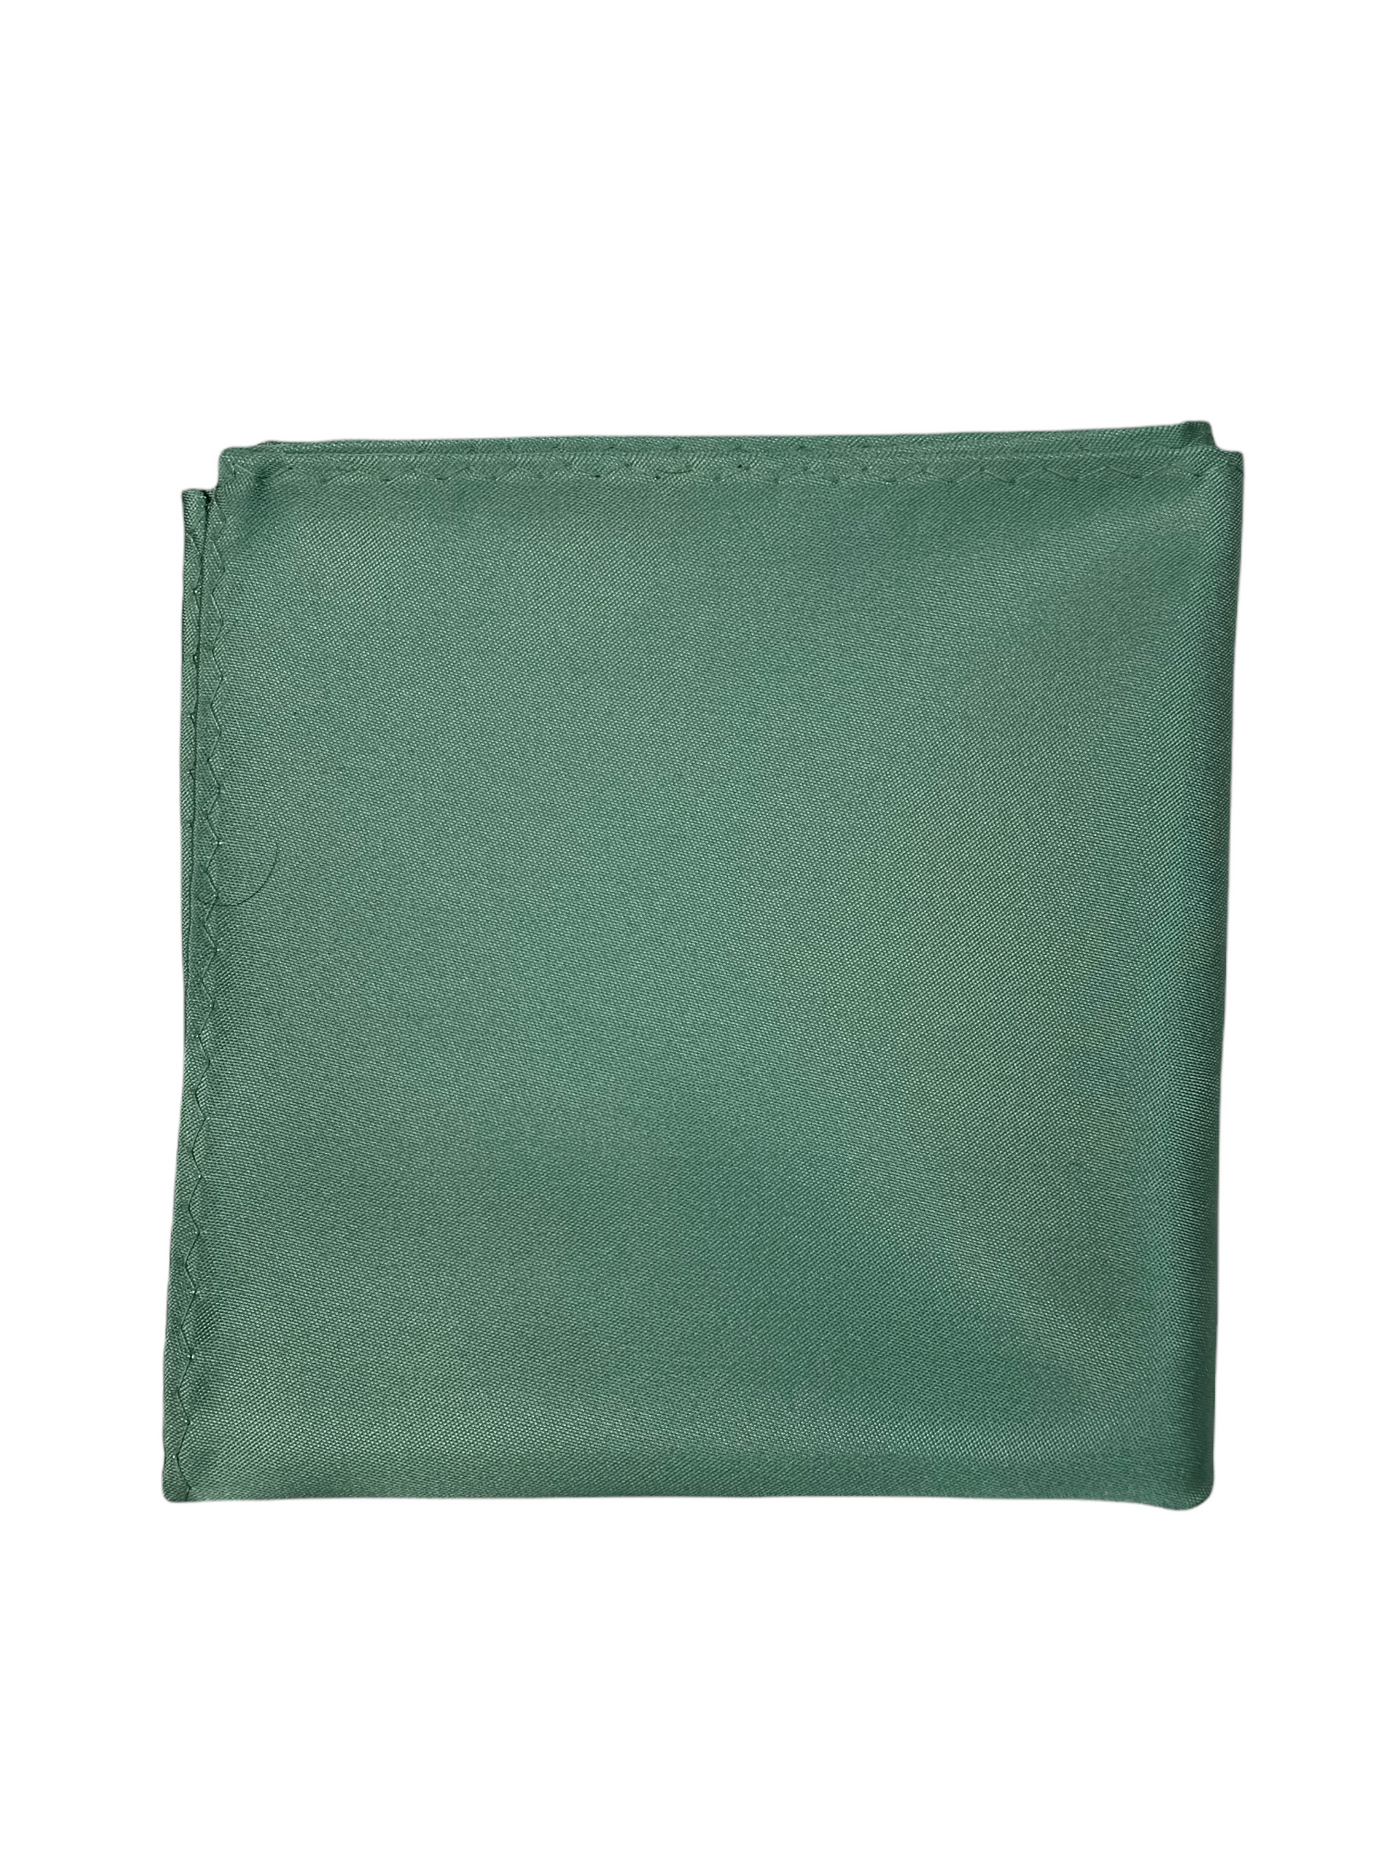 Mouchoir de poche satiné vert sauge